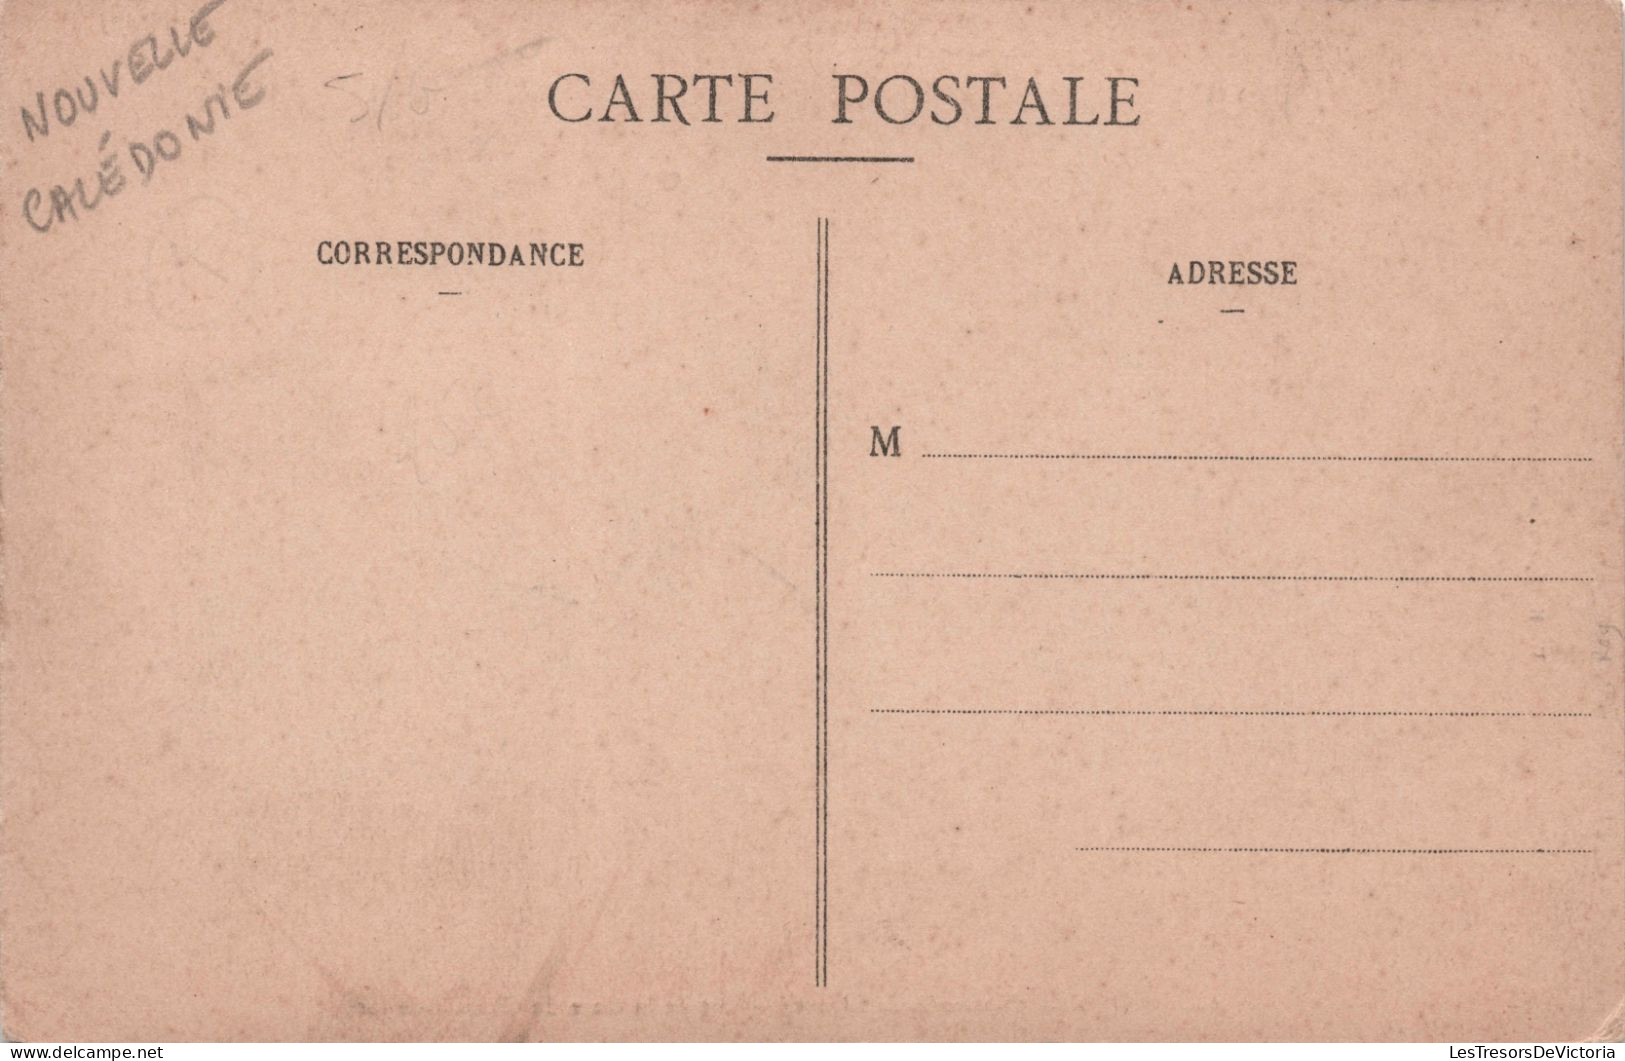 NOUVELLE CALEDONIE - Nouméa - Vue De La Gare Du Chemin De Fer - W H C Editeur - Carte Postale Ancienne - Nouvelle-Calédonie